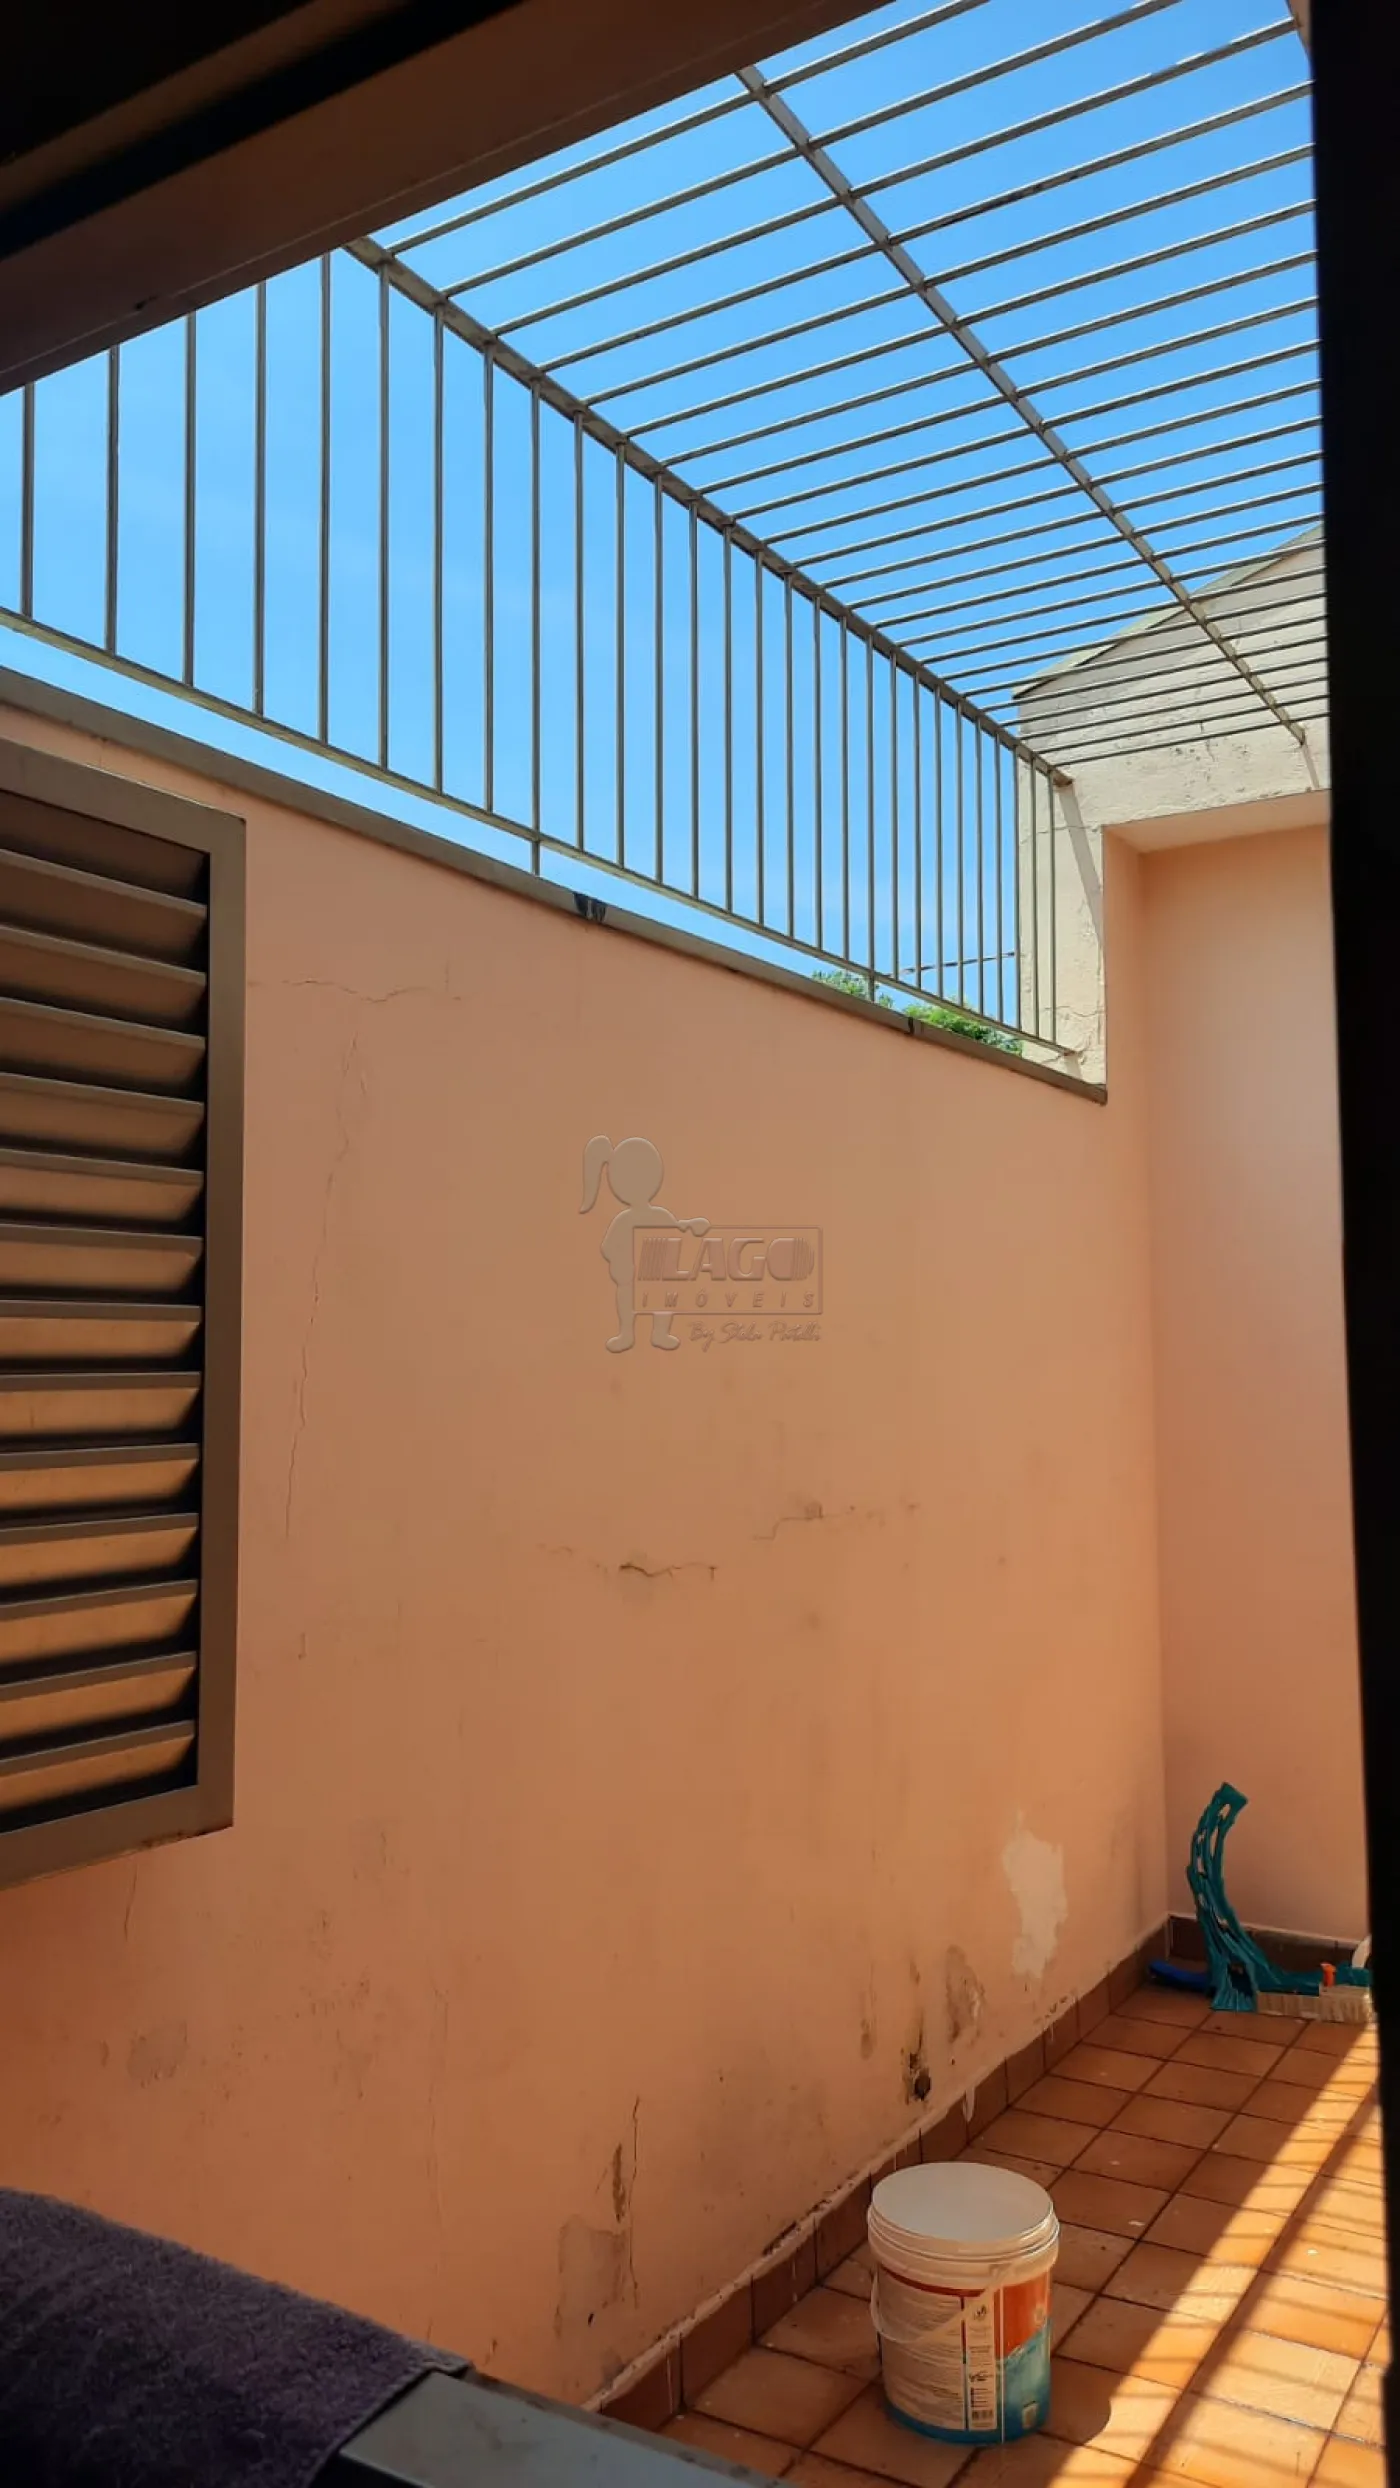 Comprar Casa / Padrão em Ribeirão Preto R$ 380.000,00 - Foto 13